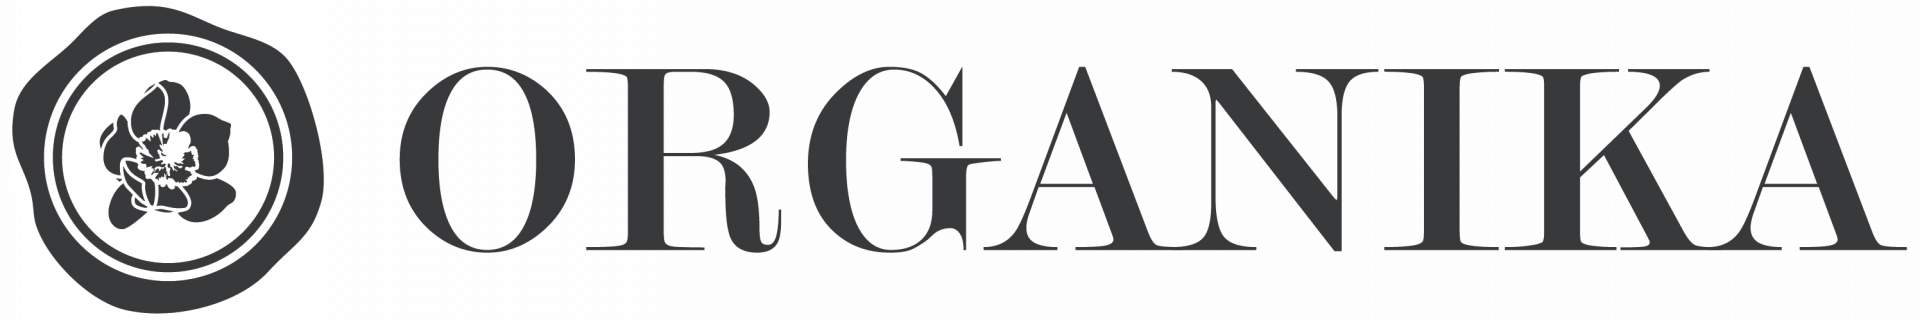 logo_orga.png